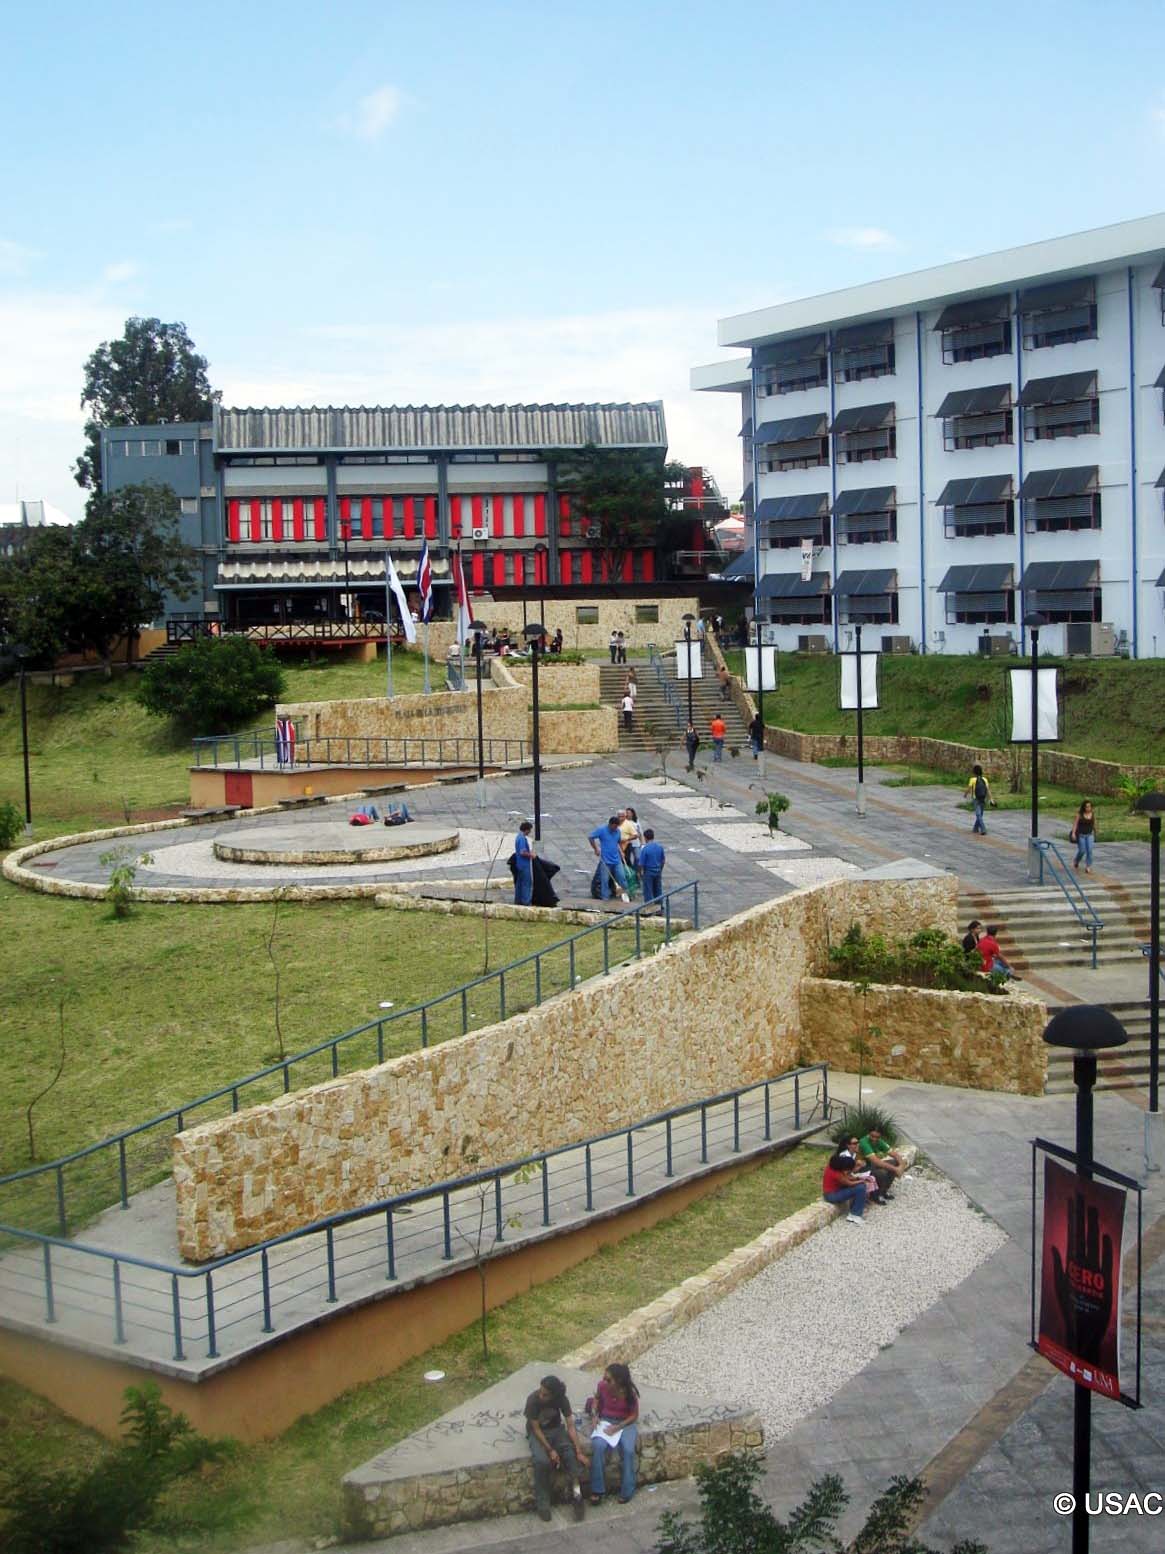 Universidad Nacional de Costa Rica campus in Heredia, Costa Rica.